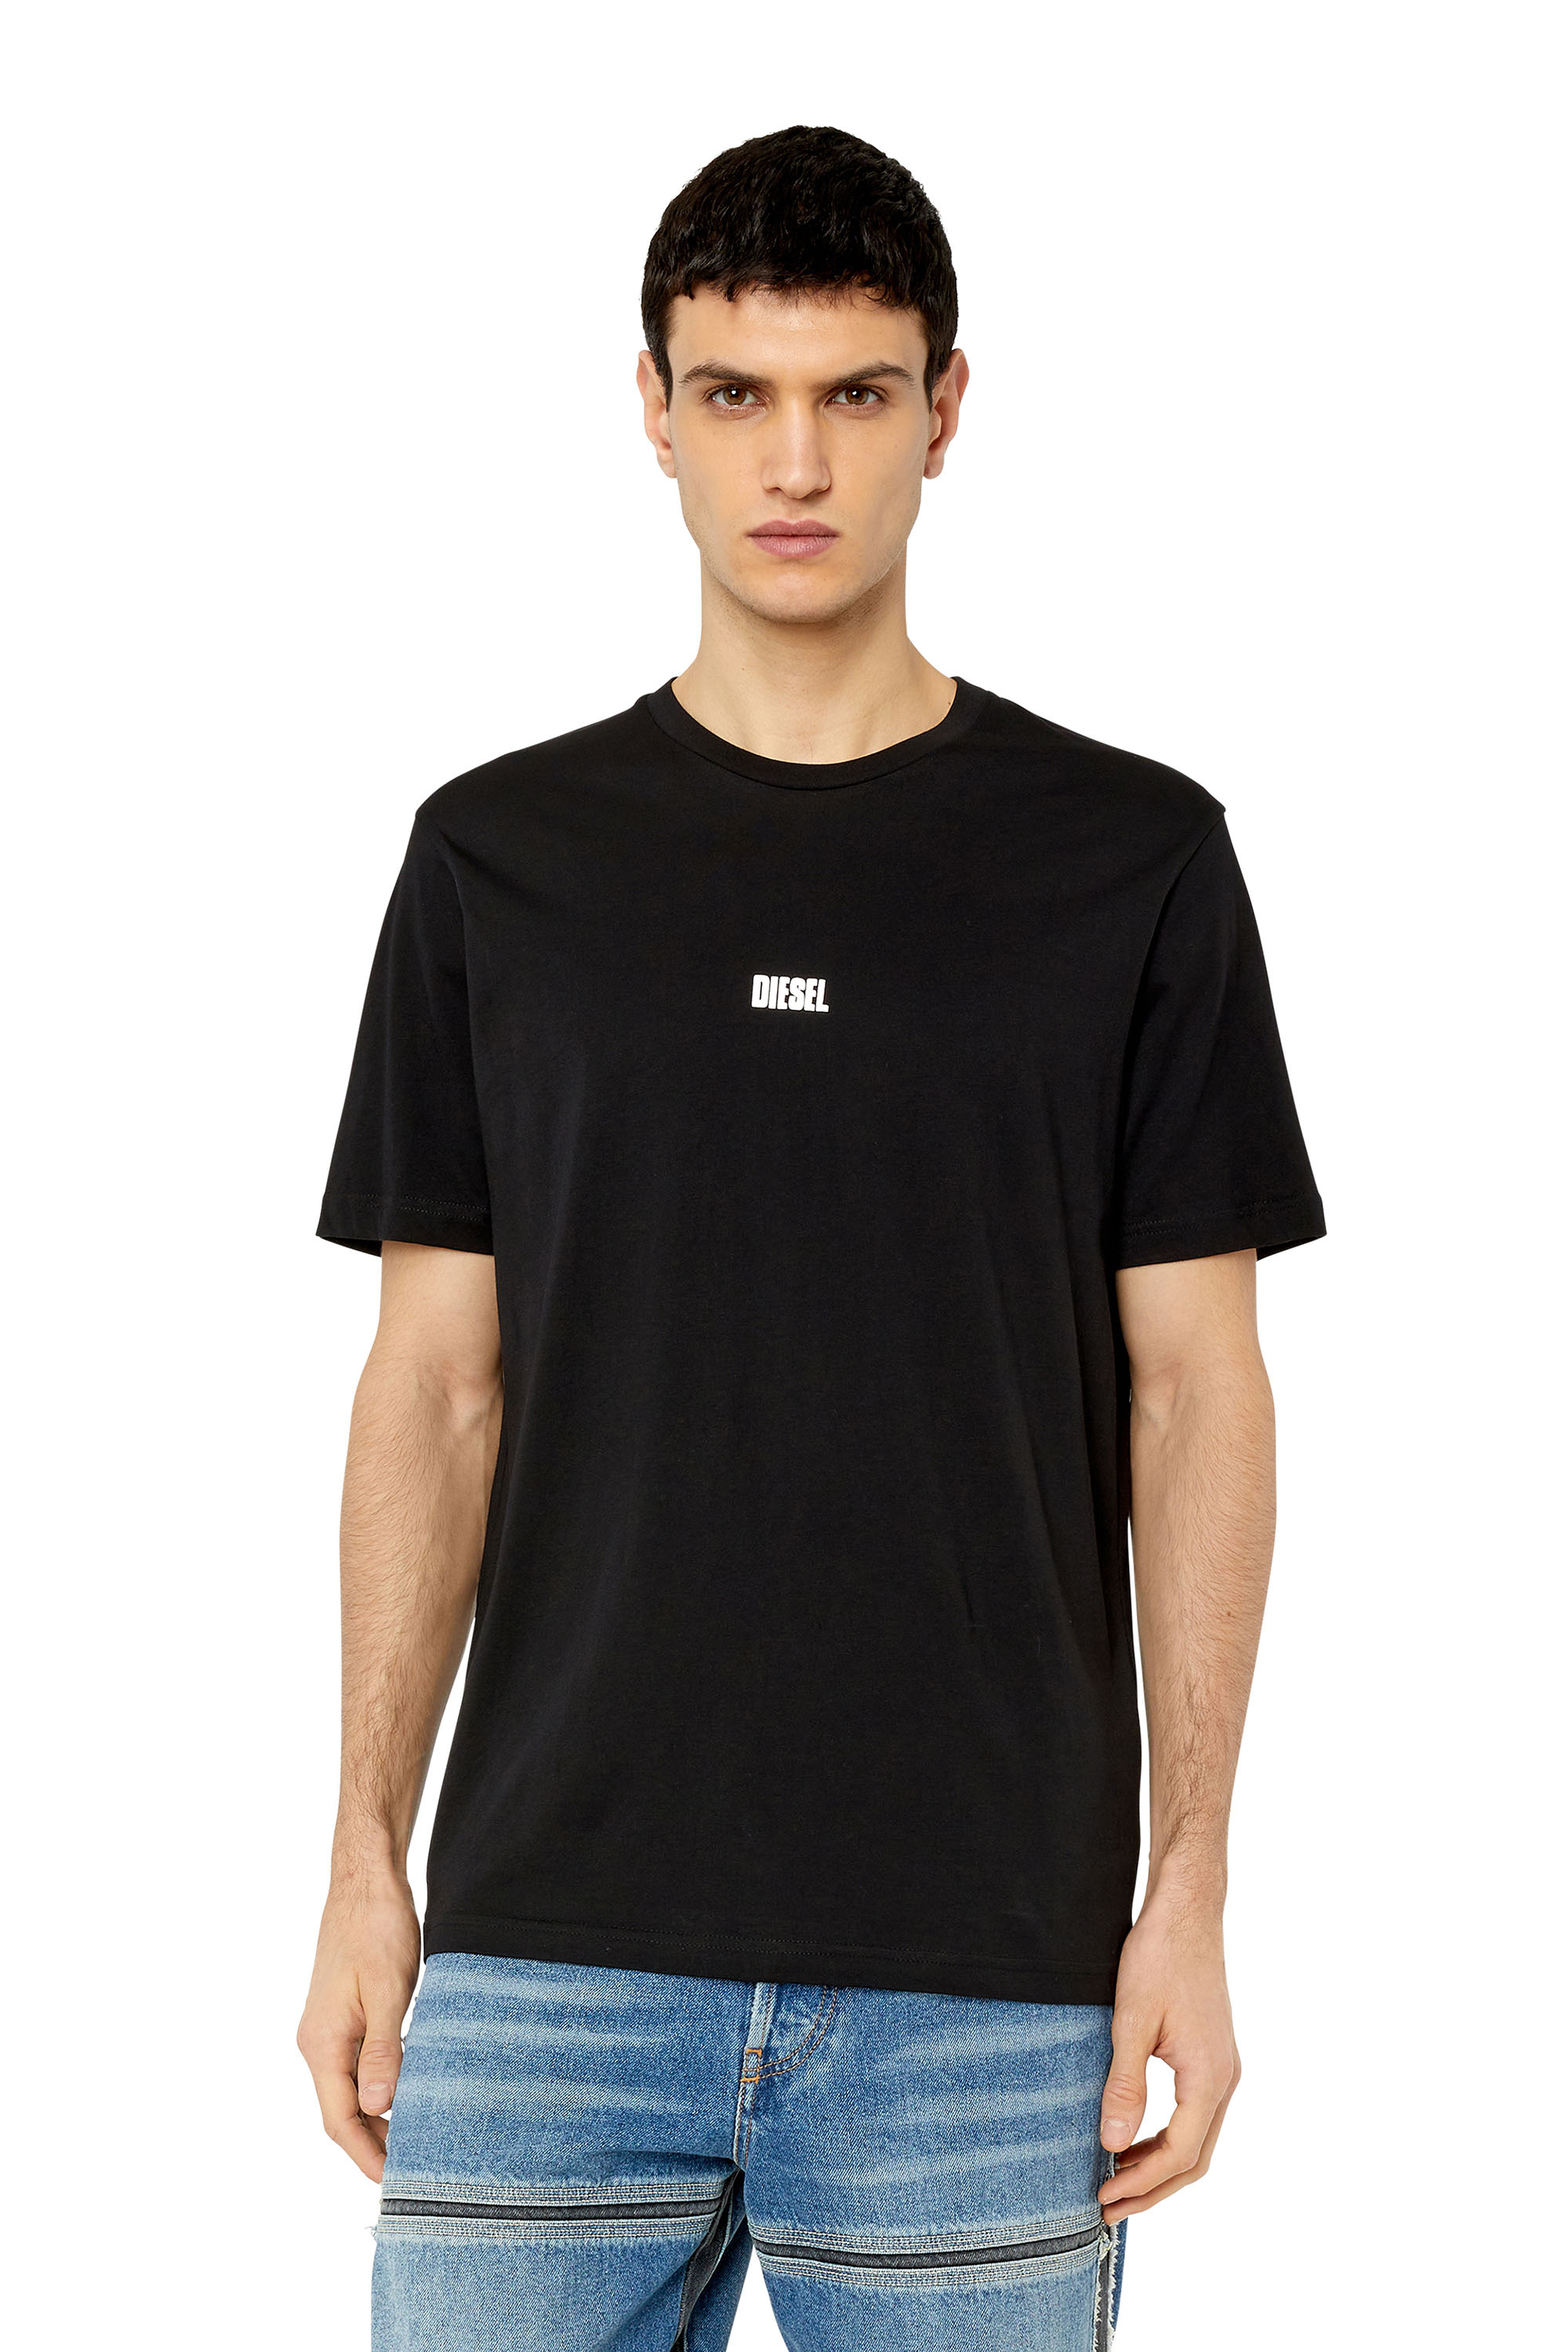 Diesel - Camiseta con Diesel logotipo en relieve - Camisetas - Hombre - Negro